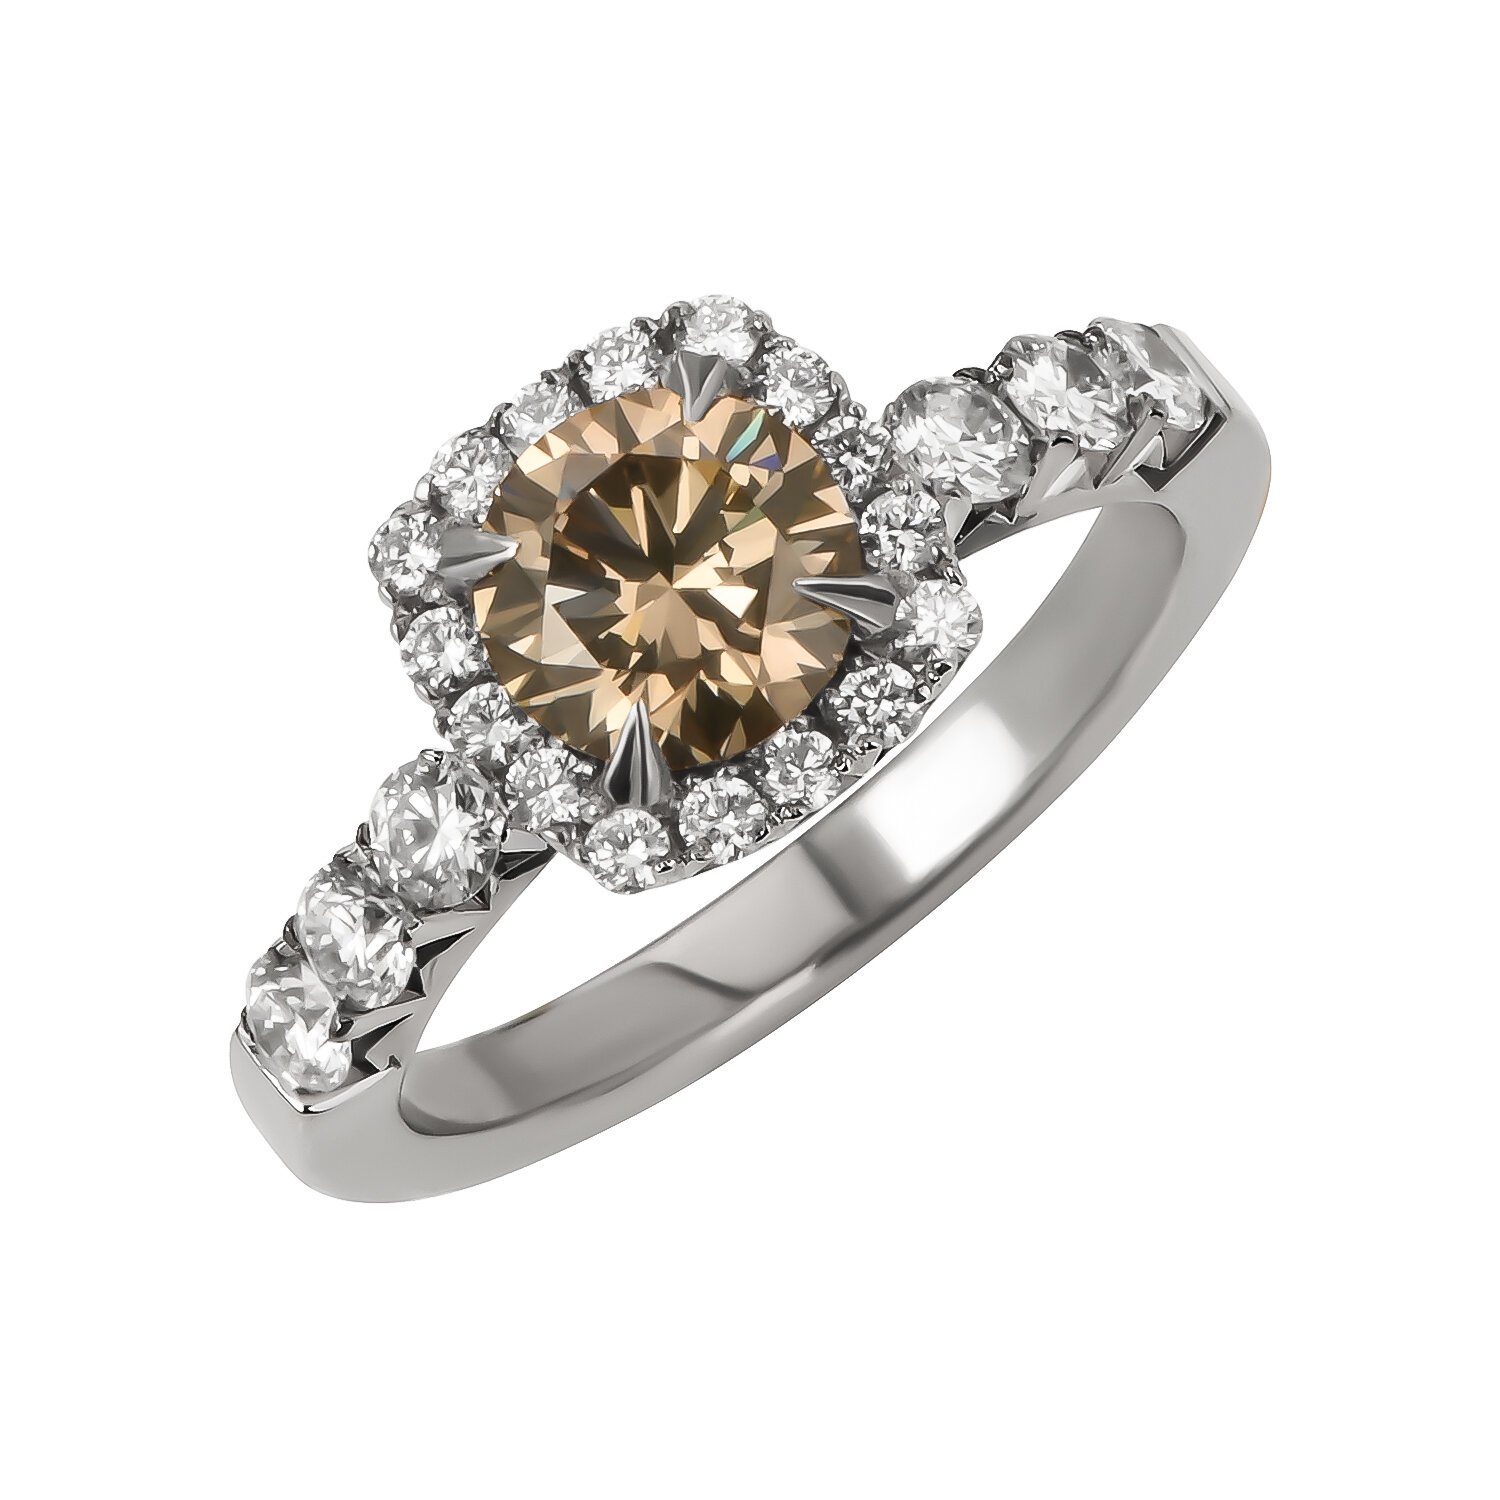 Кольцо помолвочное Constantine Filatov кольцо с коньячным бриллиантом, белое золото, 585 проба, родирование, бриллиант, размер 16.5, коричневый, белый